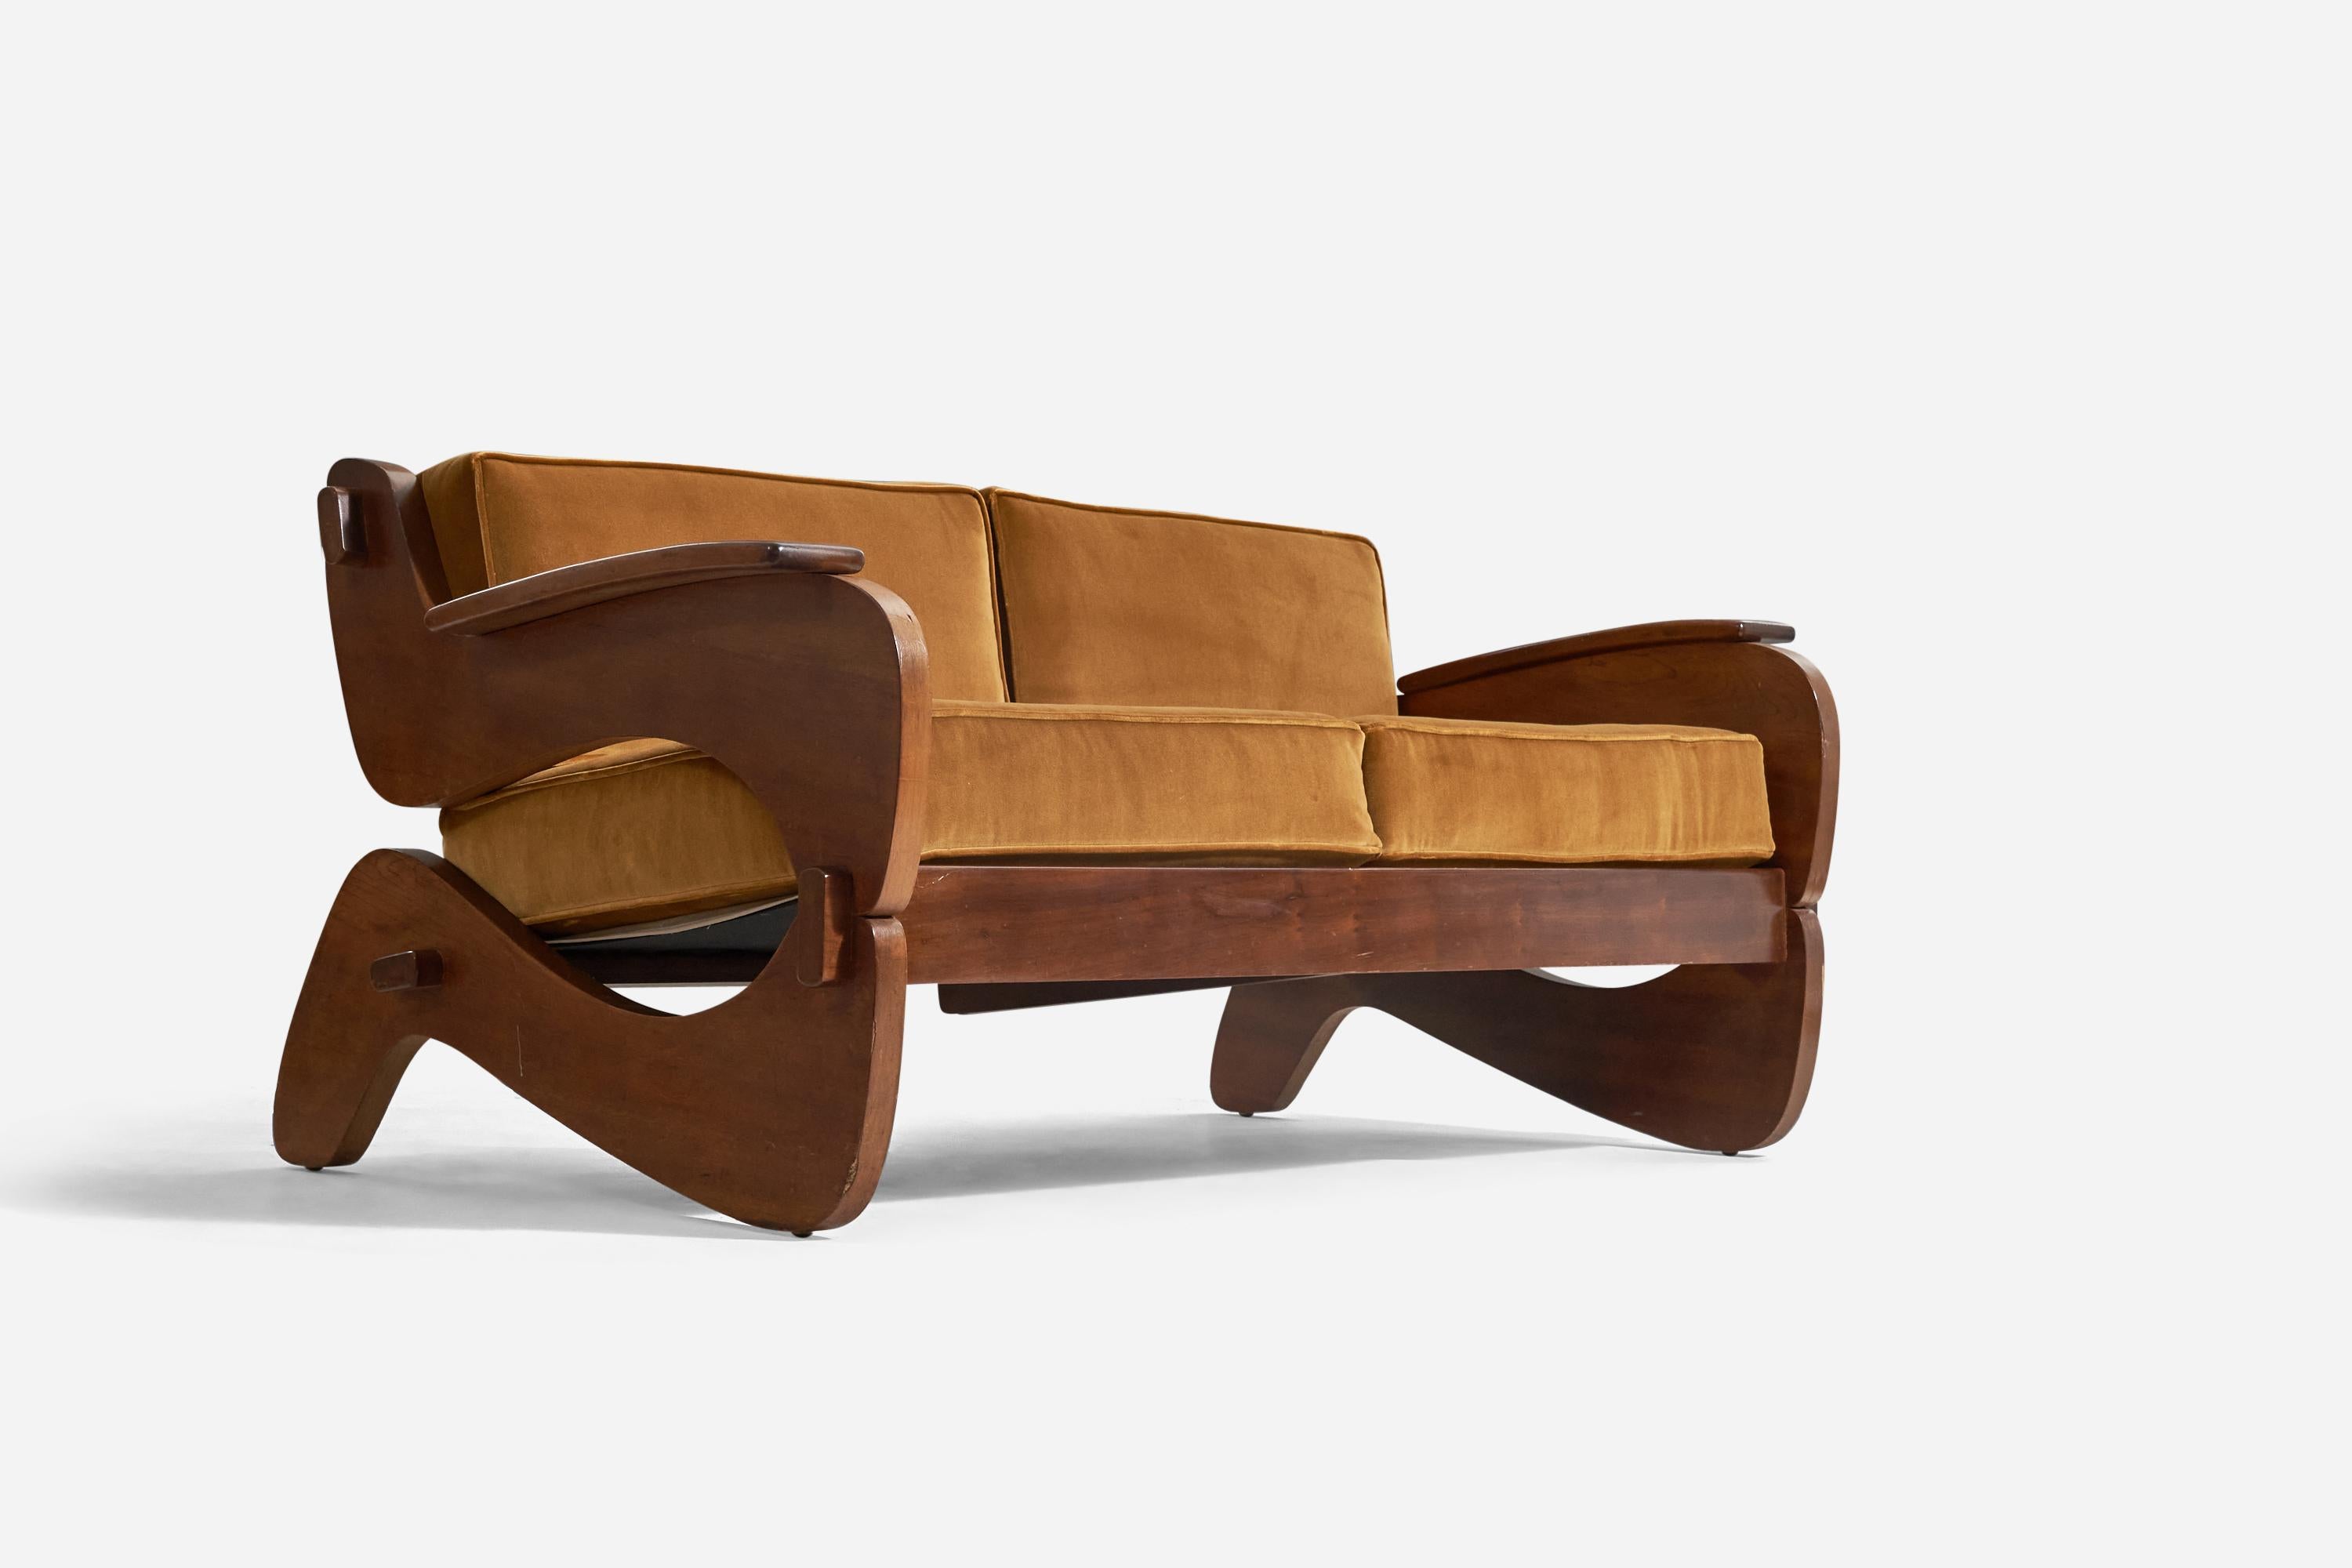 Sofa aus Holz und Samt, entworfen und hergestellt von Grafton Everest, Südafrika, ca. 1970er Jahre.